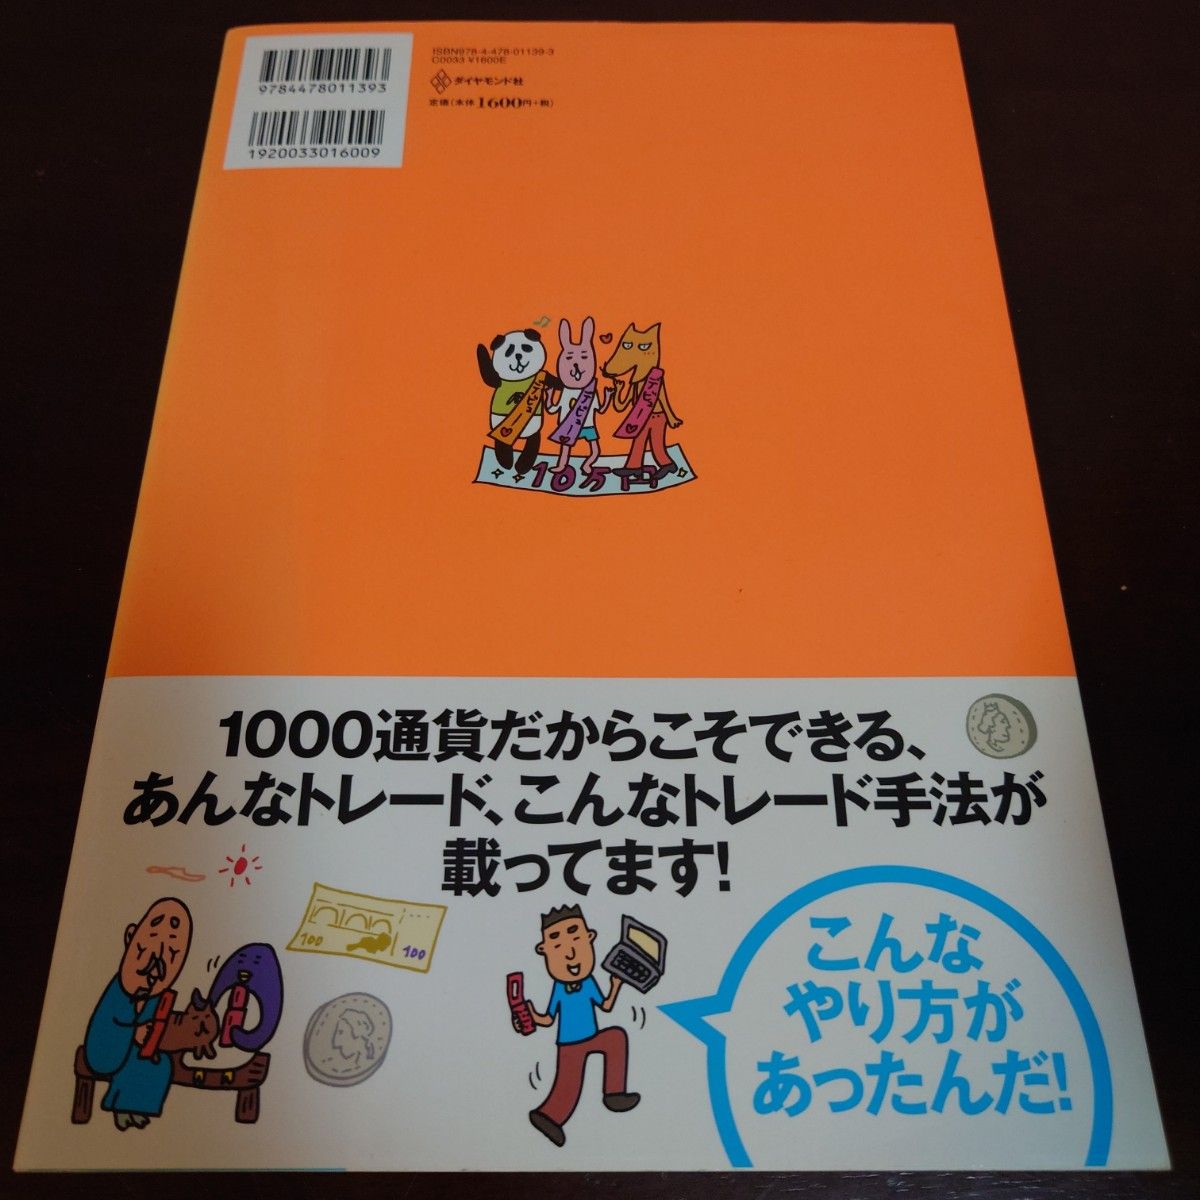 一番売れてる投資の雑誌ZAiが作った10万円から始めるFX超入門 初心者は10…